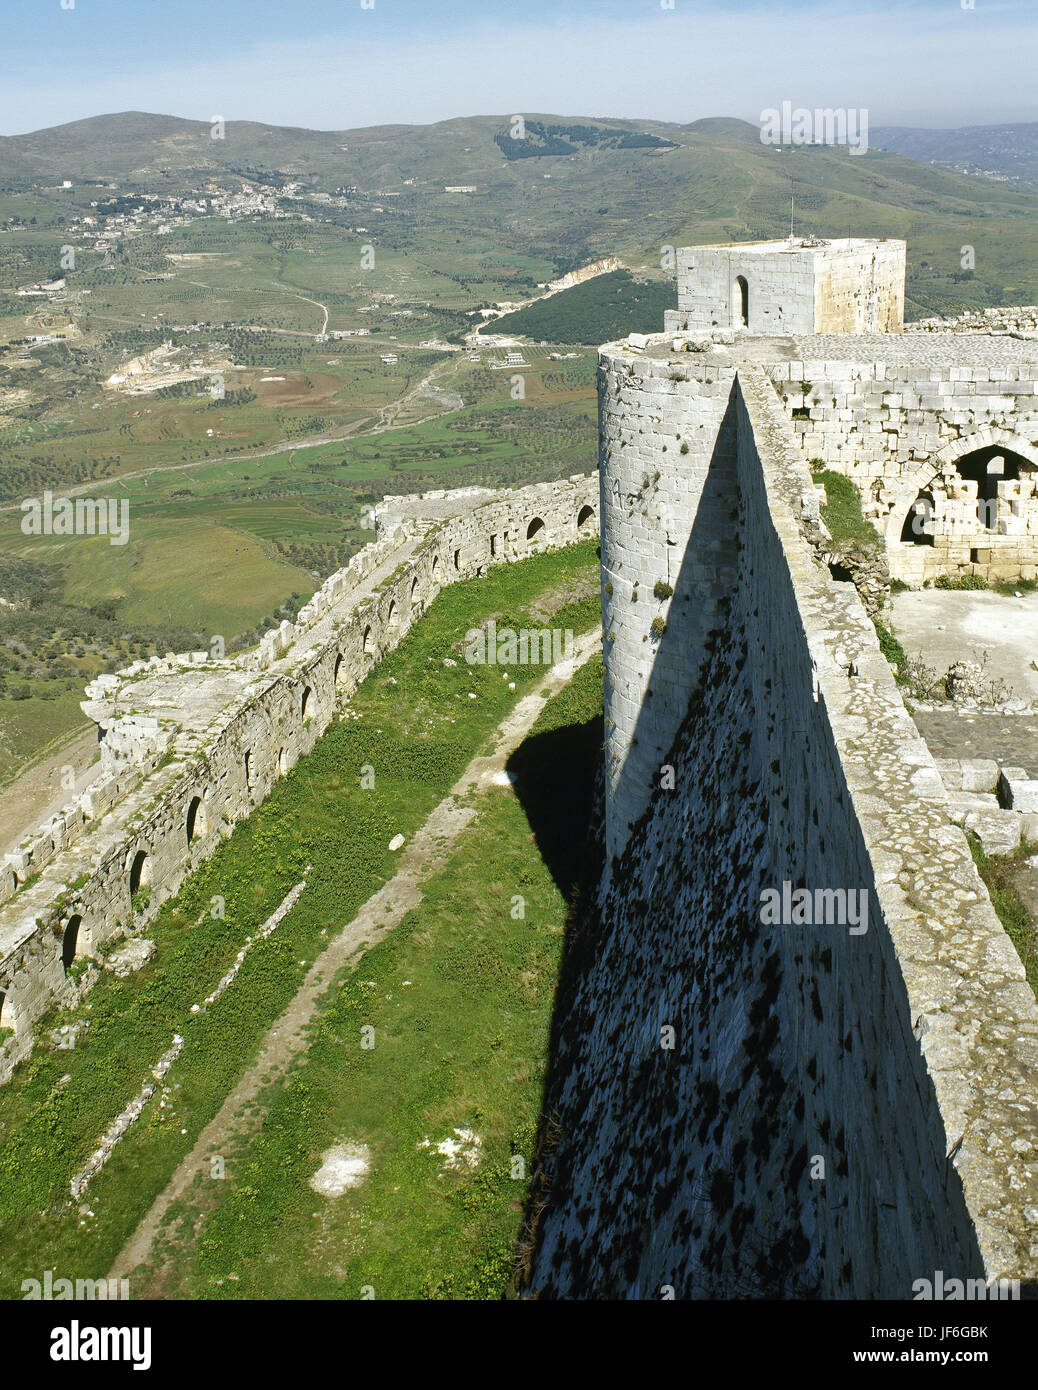 Krak des Chevaliers, Kreuzfahrerburg. Von Ritter Hospitaller gebaut (zweite Burg), 1142-1170. Blick auf Wände. Syrien. Foto vor dem syrischen Bürgerkrieg. Stockfoto